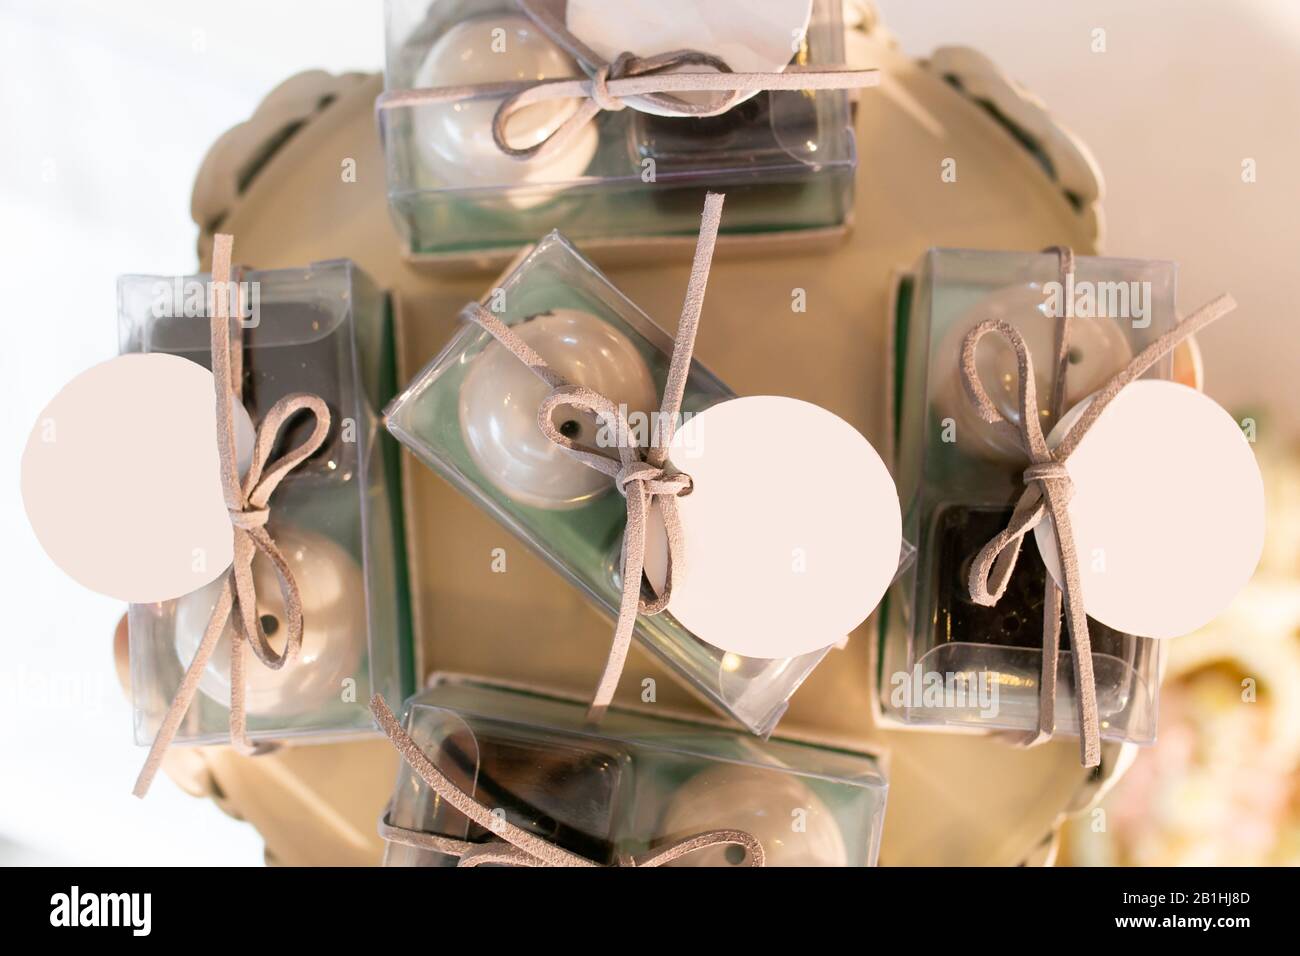 Salz und Pfeffer Shaker als Hochzeitsgeschenke oder Souvenirs mit  Plastikverpackungen, die Brautpaar für Verwandte und Gäste als Dankeschön  für t vorbereitet haben Stockfotografie - Alamy